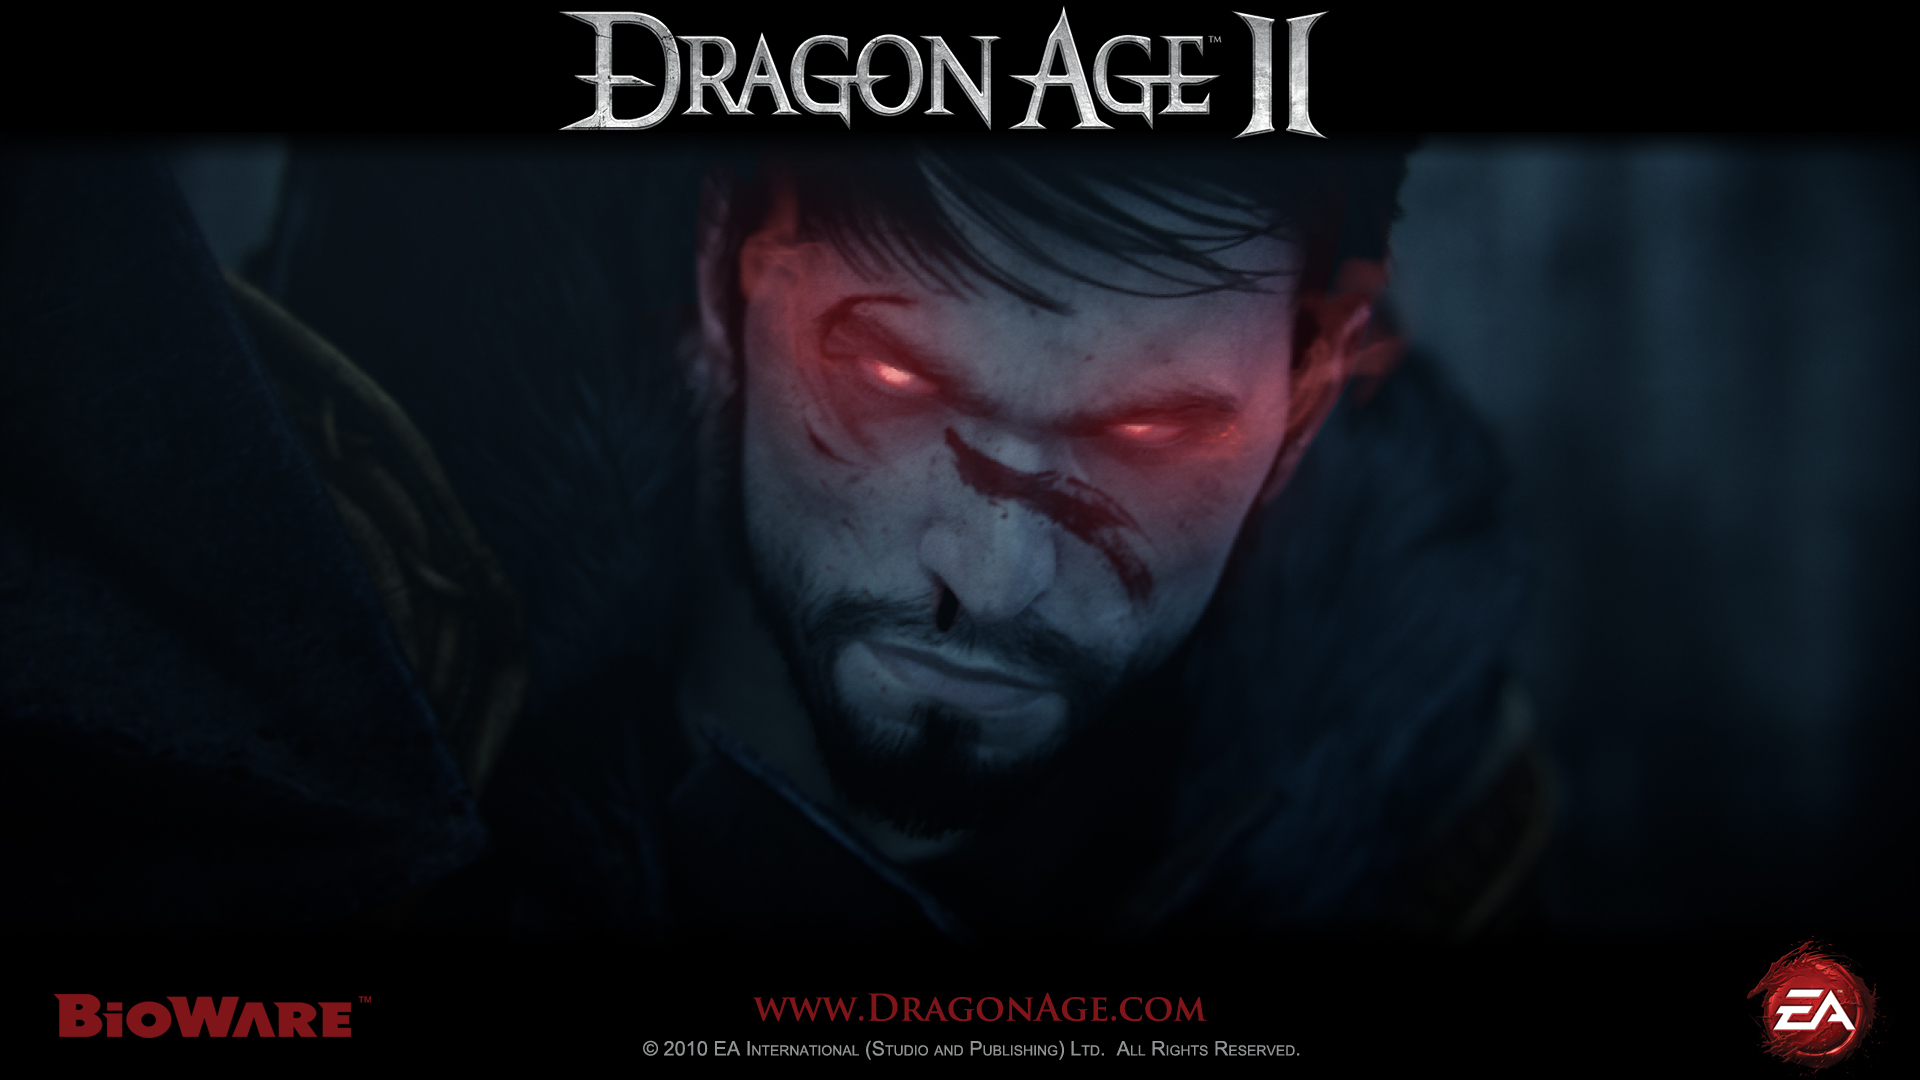 Video Game Dragon Age Ii 1920x1080